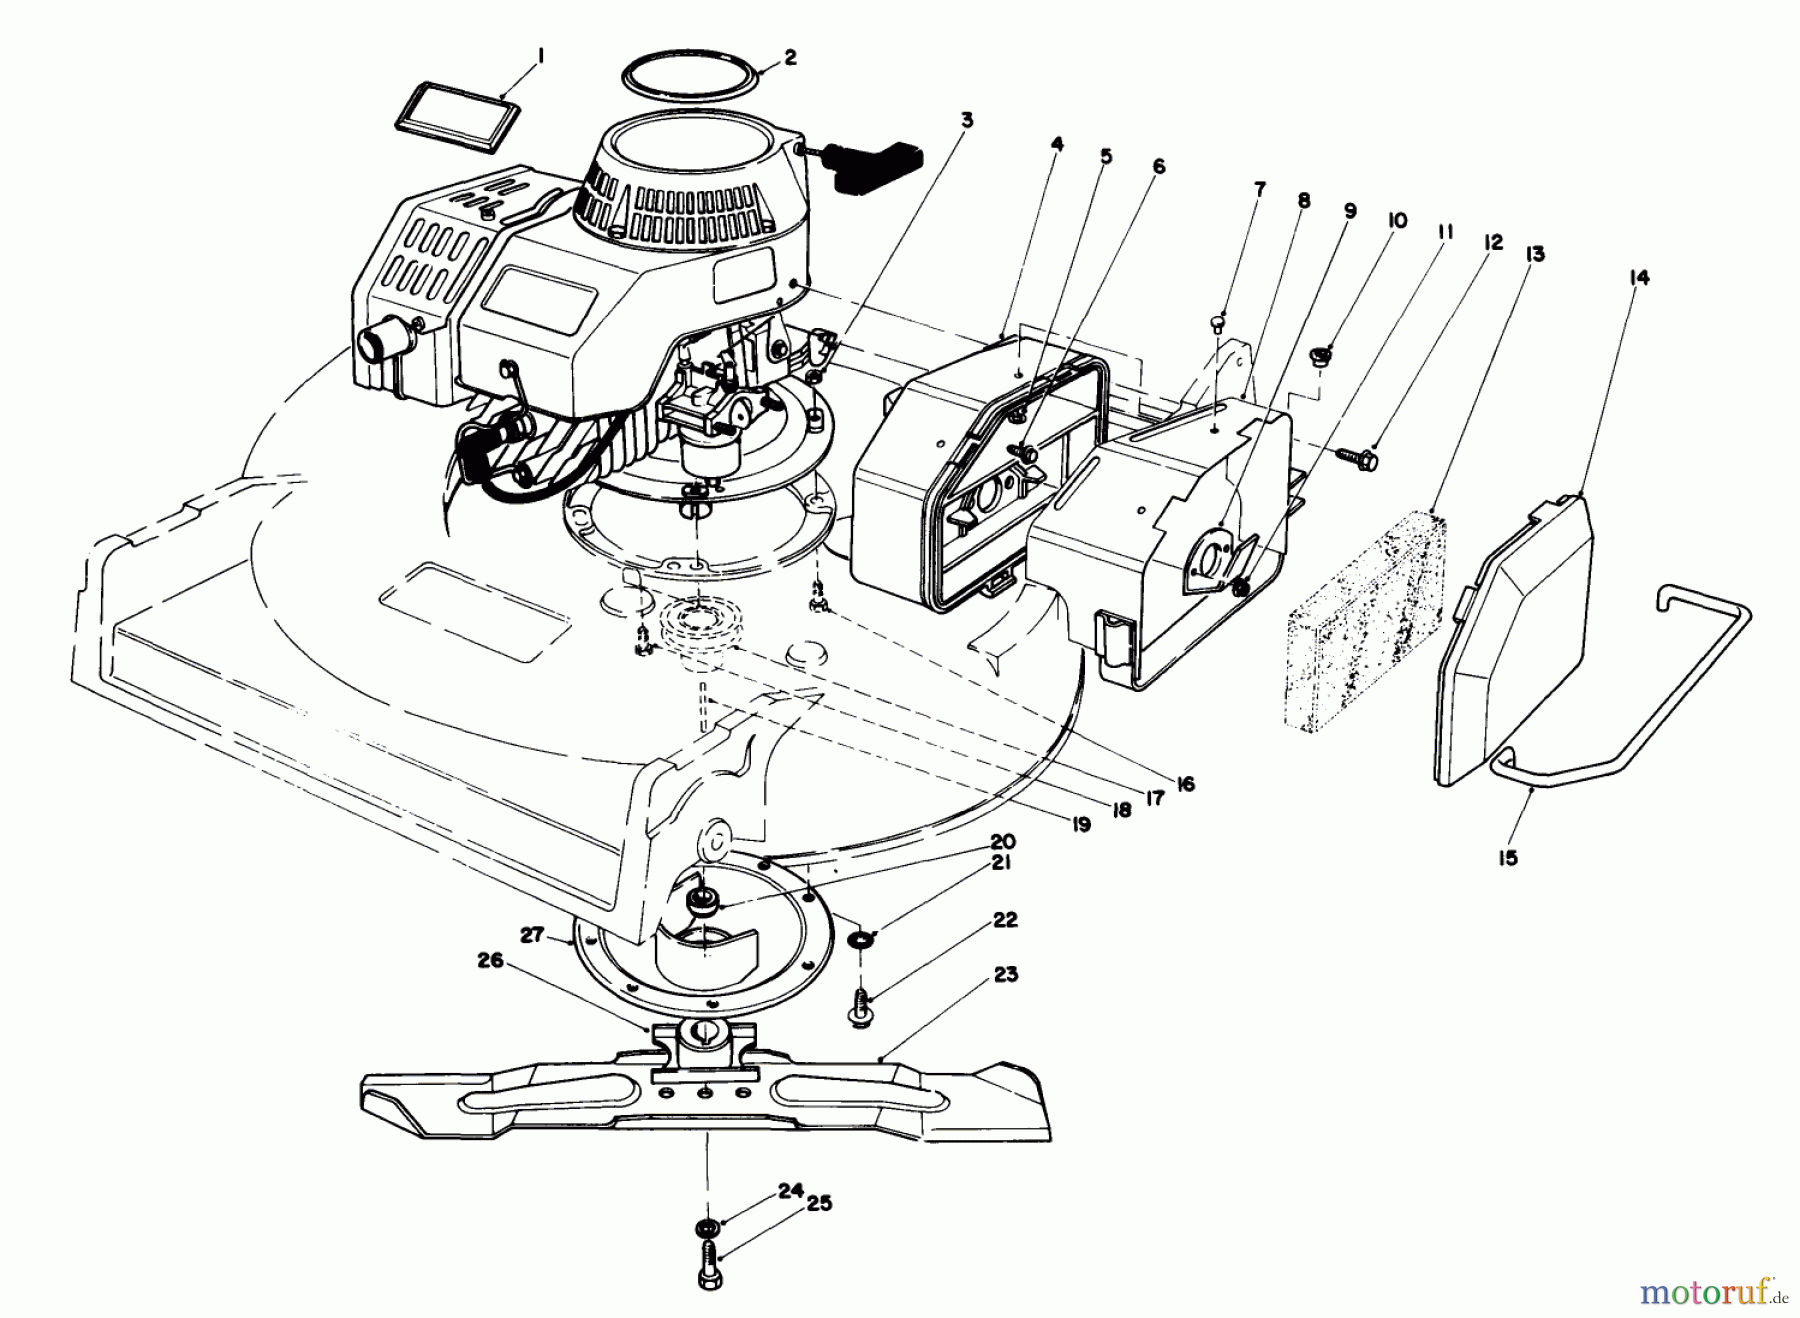  Toro Neu Mowers, Walk-Behind Seite 2 22035C - Toro Lawnmower, 1988 (8000001-8999999) ENGINE ASSEMBLY